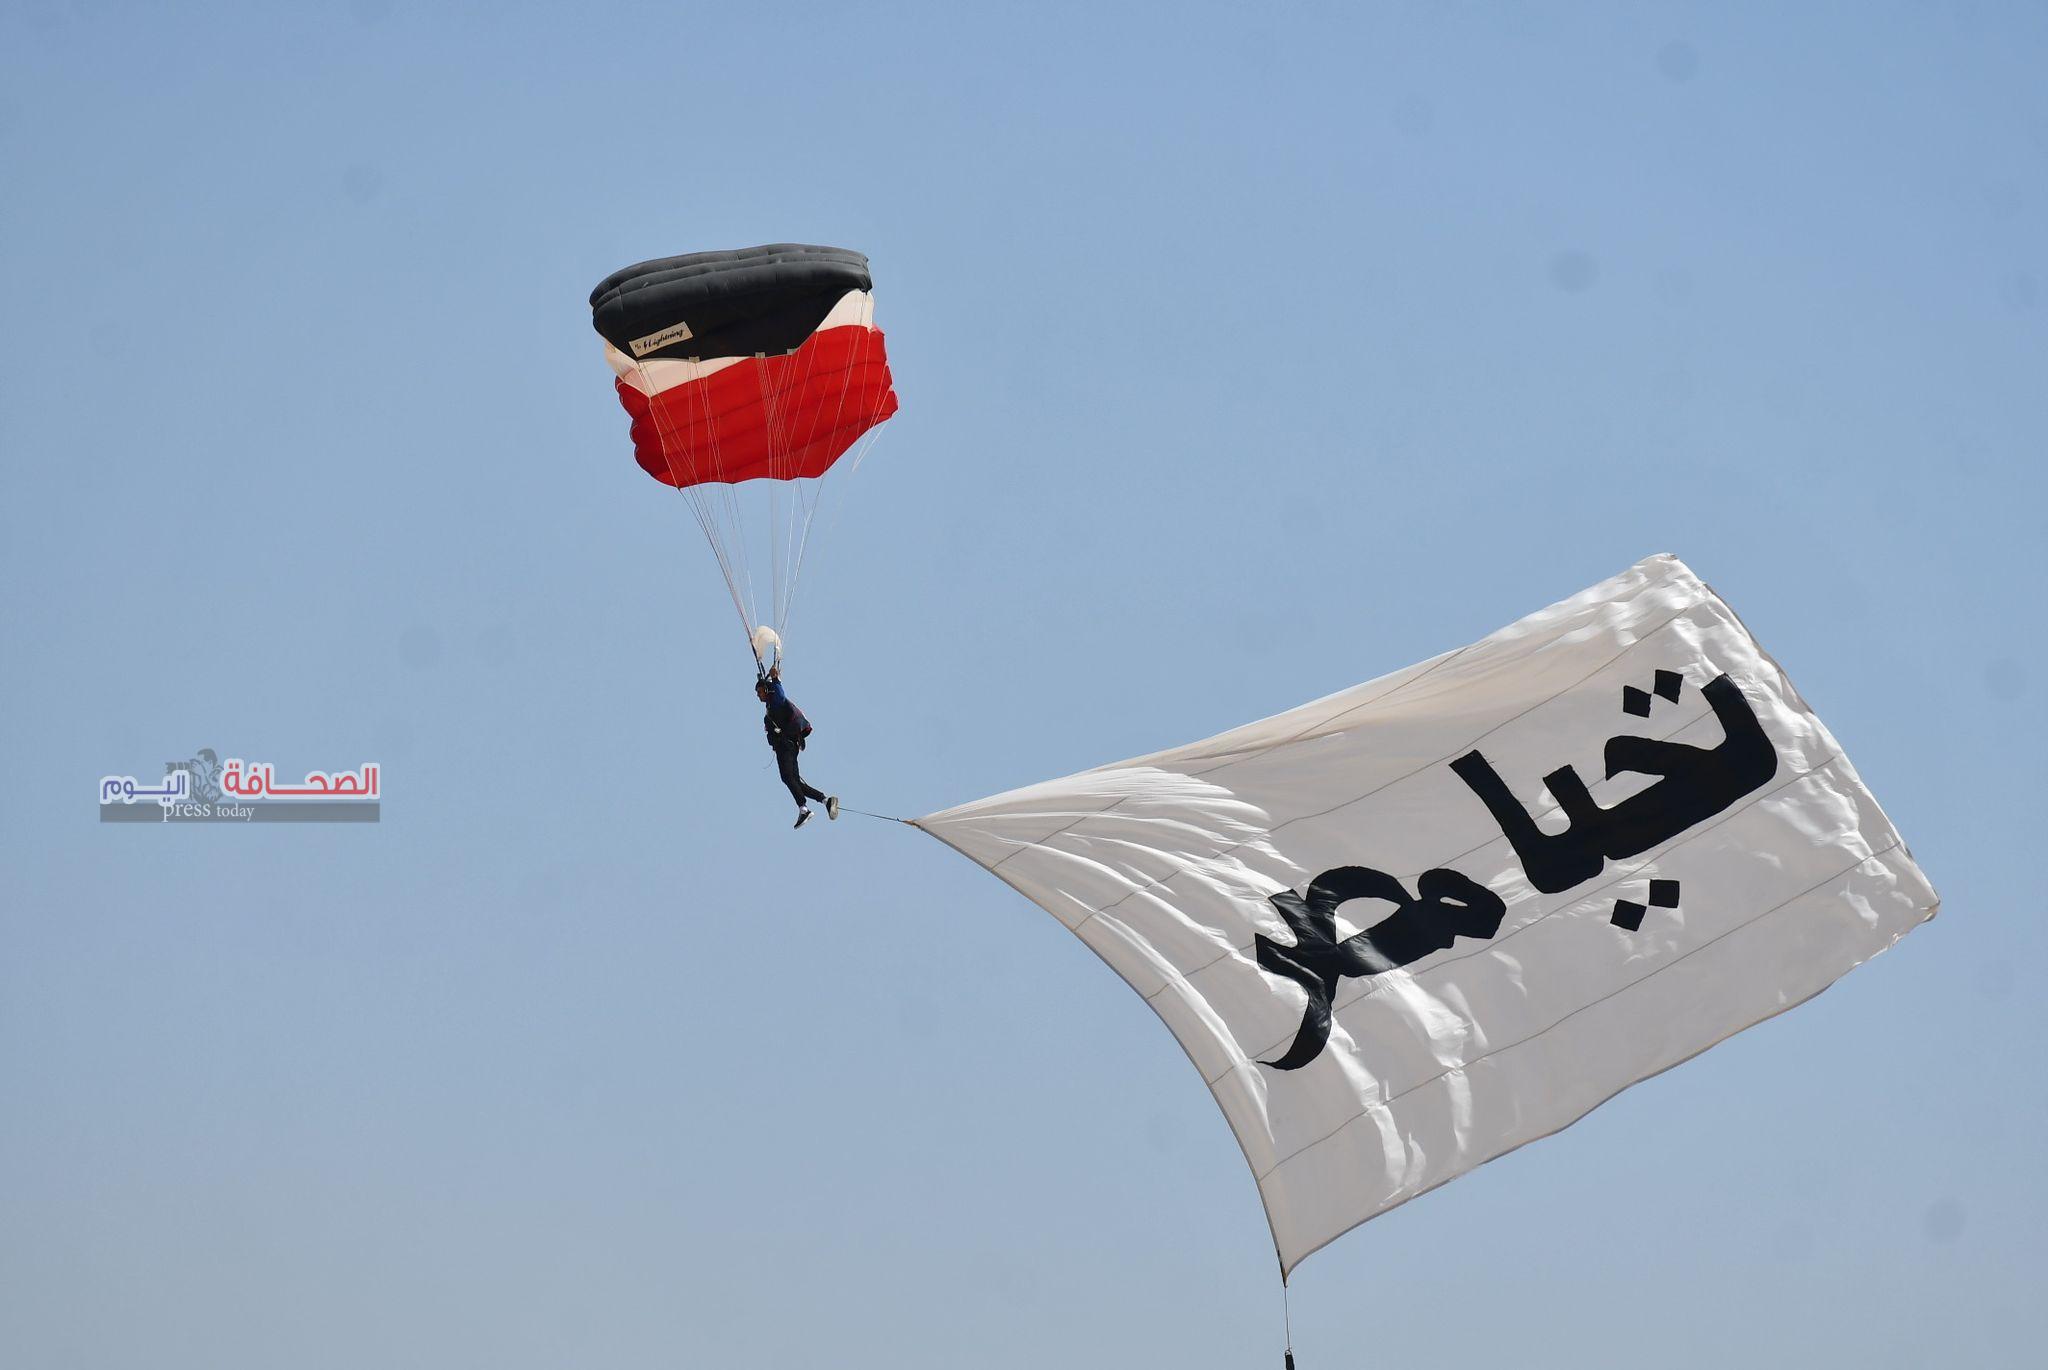 بالصور .. نسور القوات الجوية المصرية والكورية فى عرض جوى ببانوراما أهرامات الجيزة